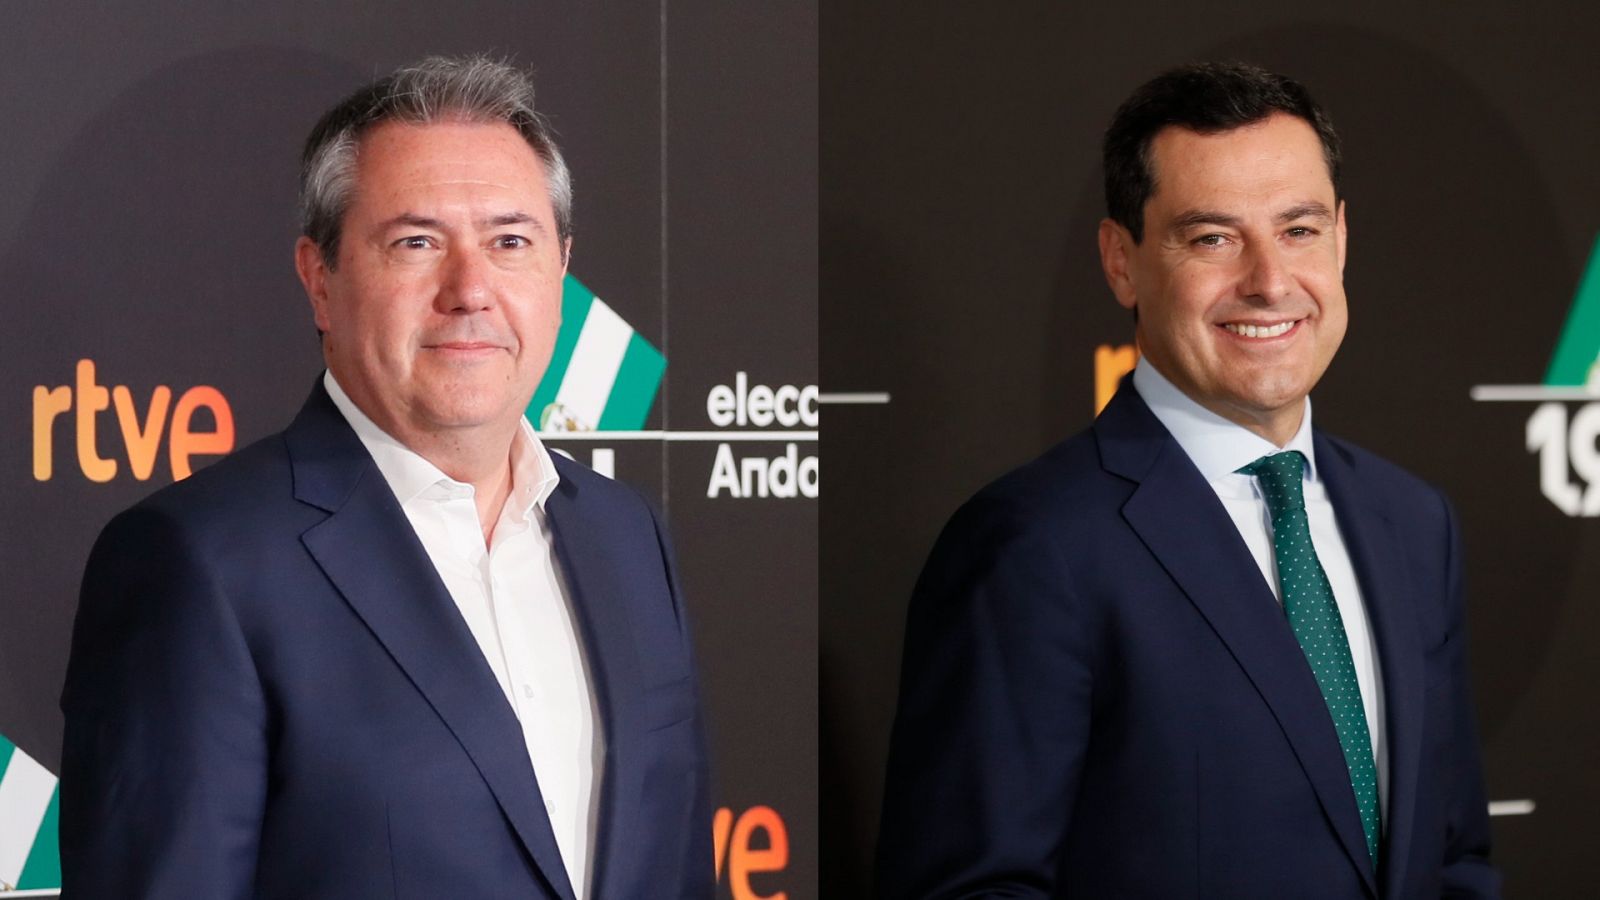 Elecciones Andalucía: Espadas afirma que la economía "no está mejor" con el PP